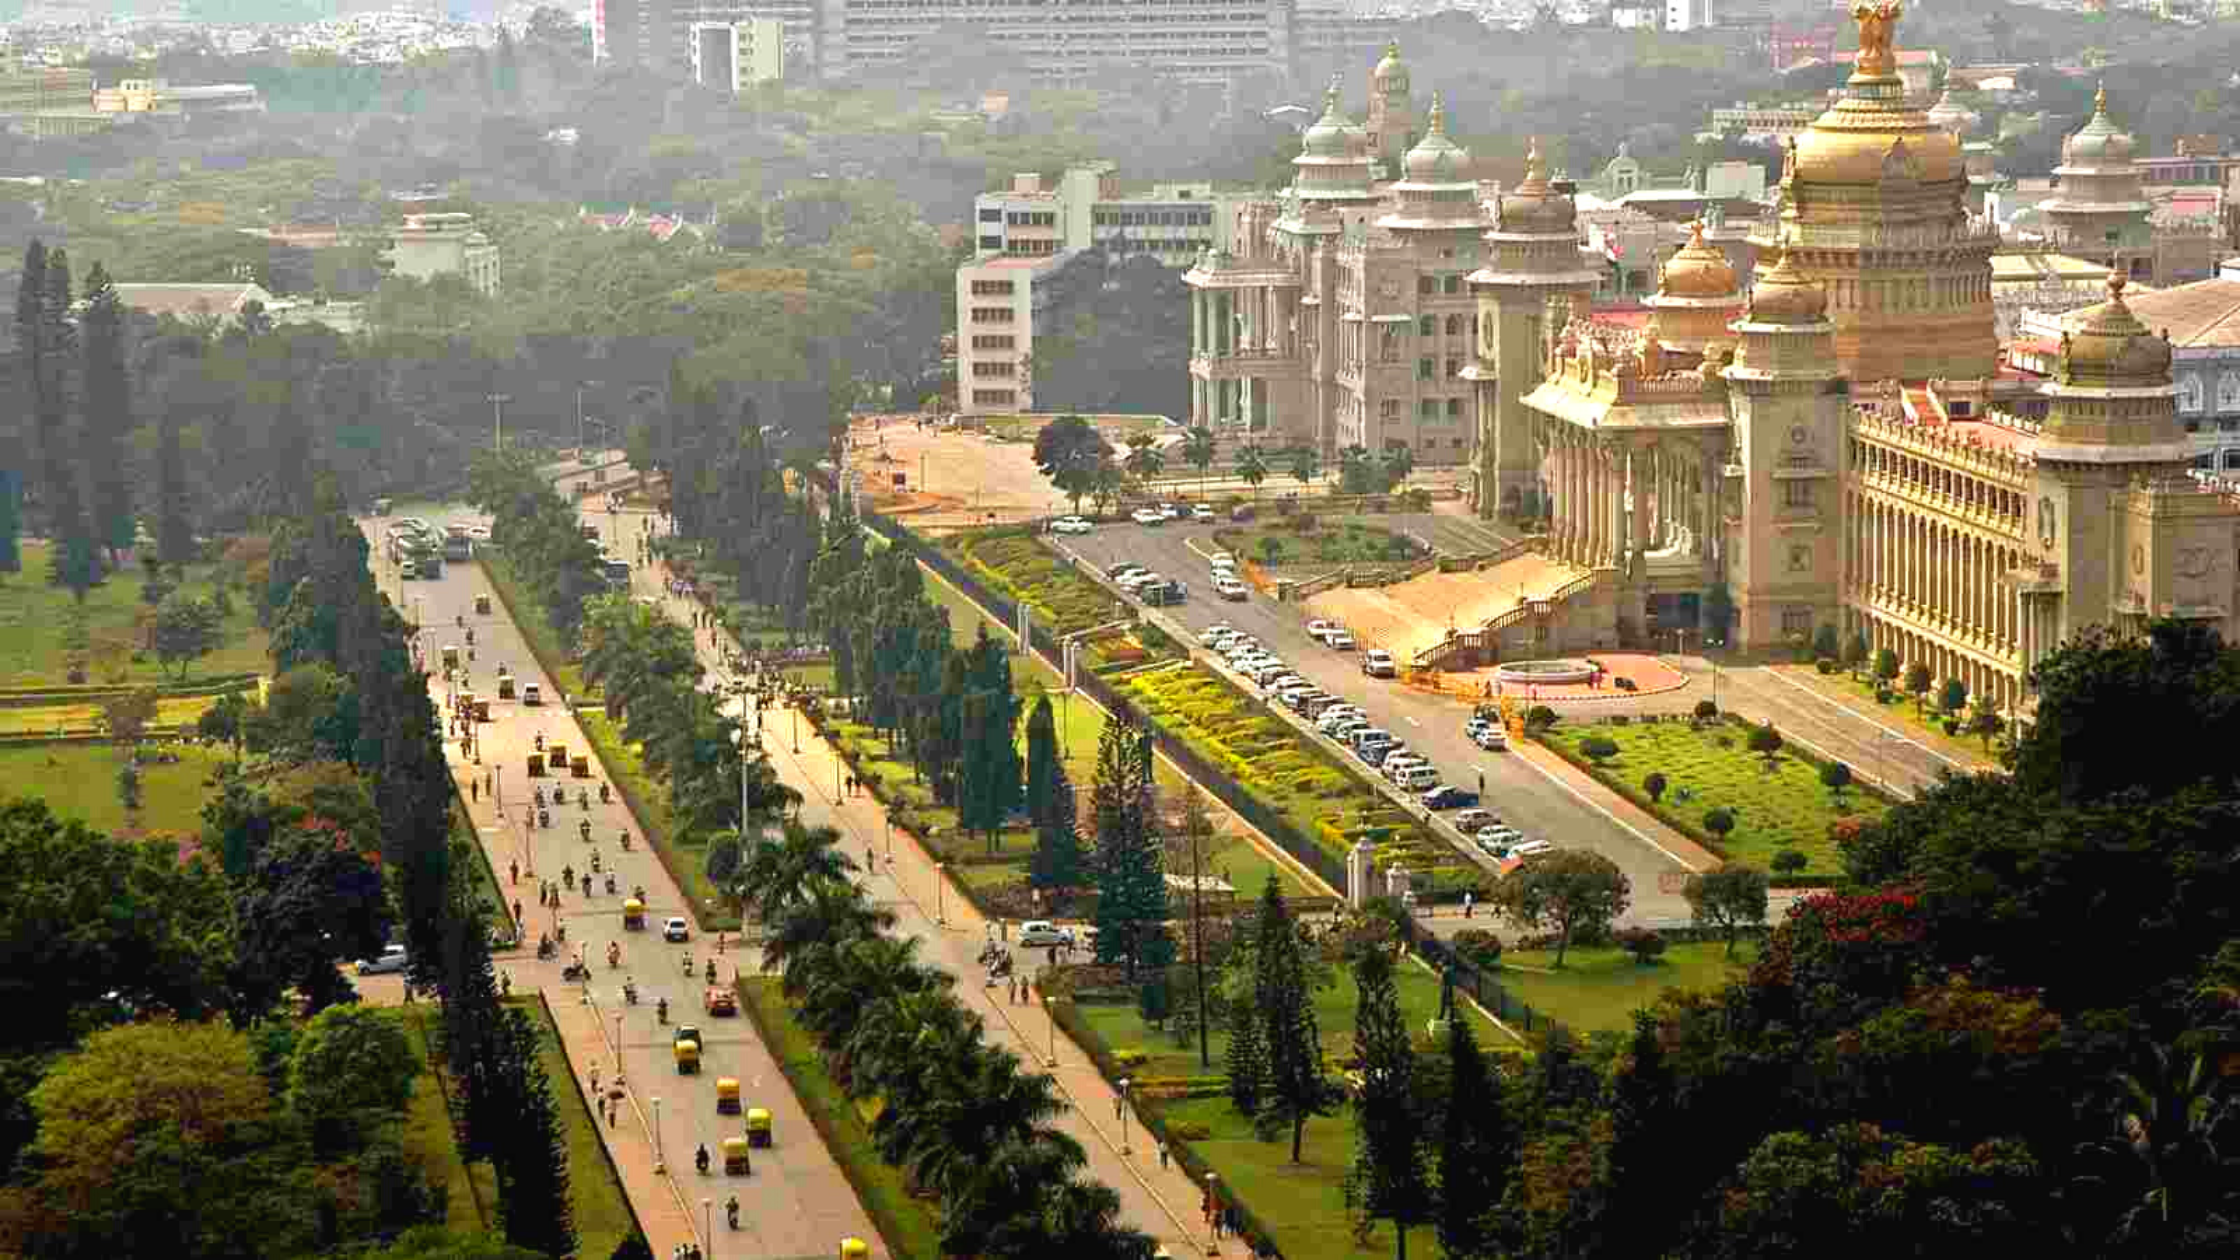 Bengaluru’s housing market outlook in 2021